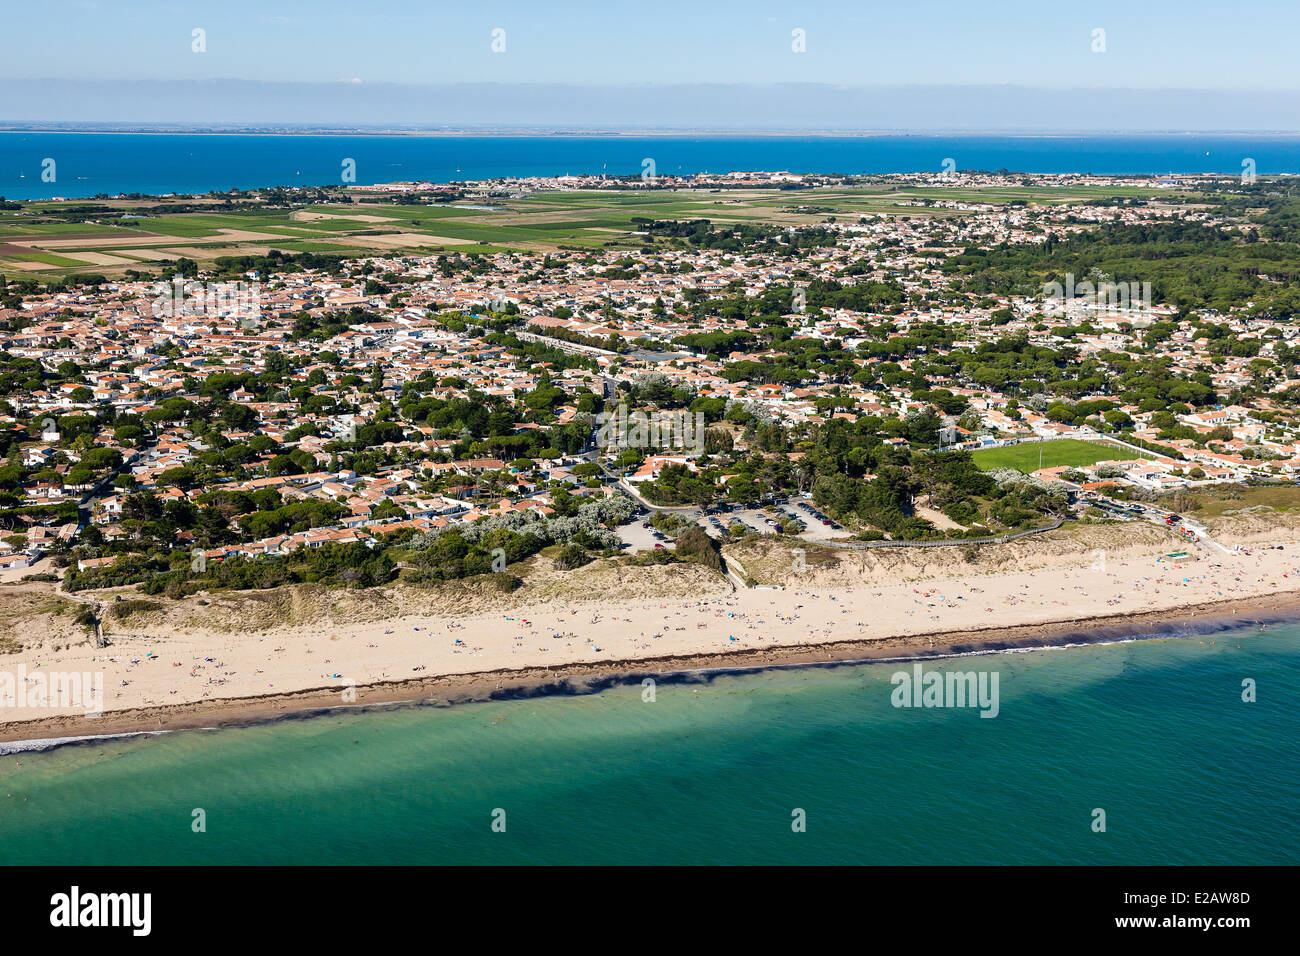 France, Charente Maritime, Ile de Re, Le Bois Plage, Gollandieres beach and  the village (aerial view Stock Photo - Alamy